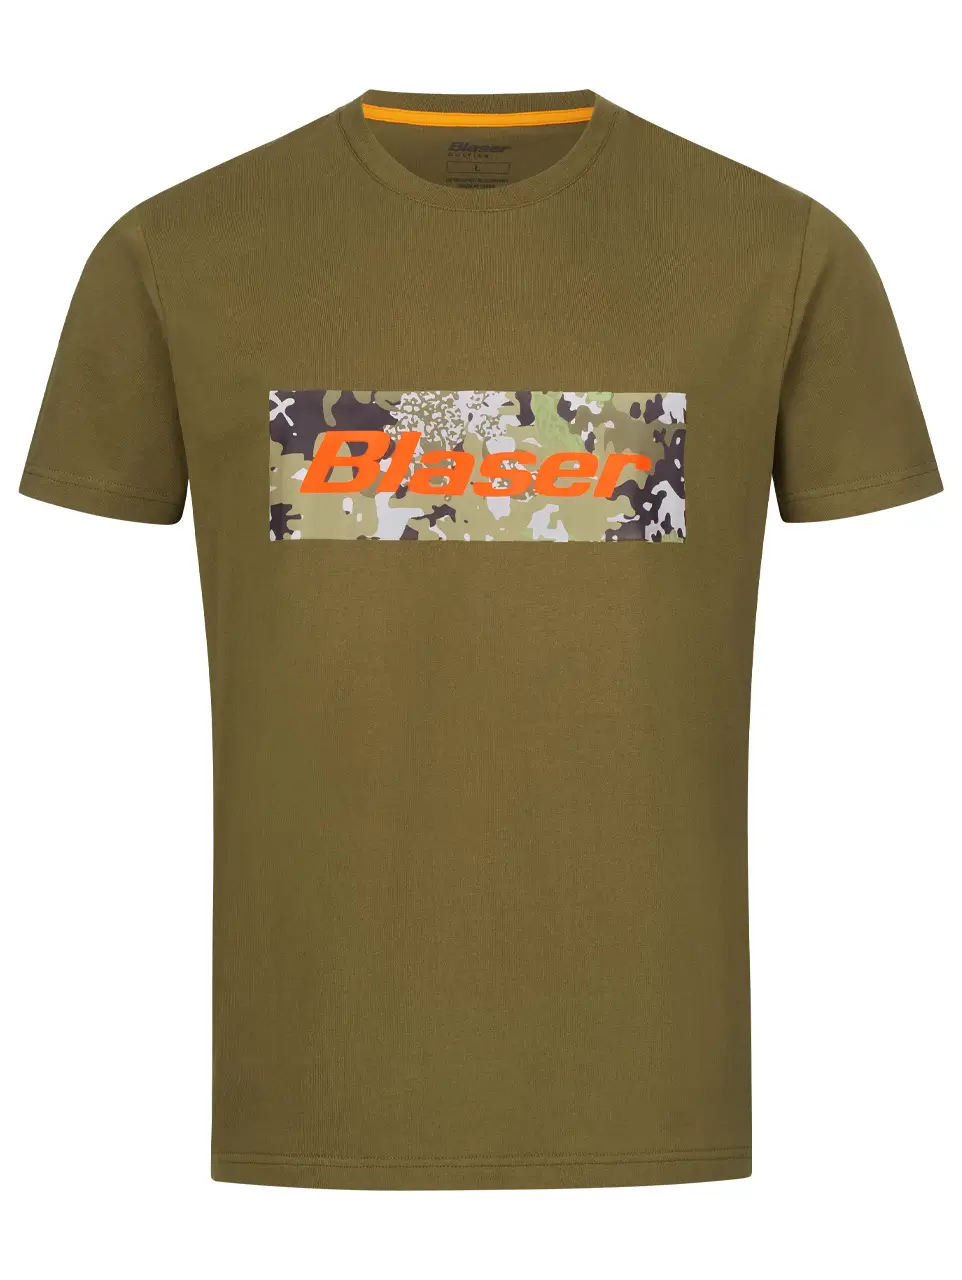 Blaser-T-Shirt in Oliv Frontansicht